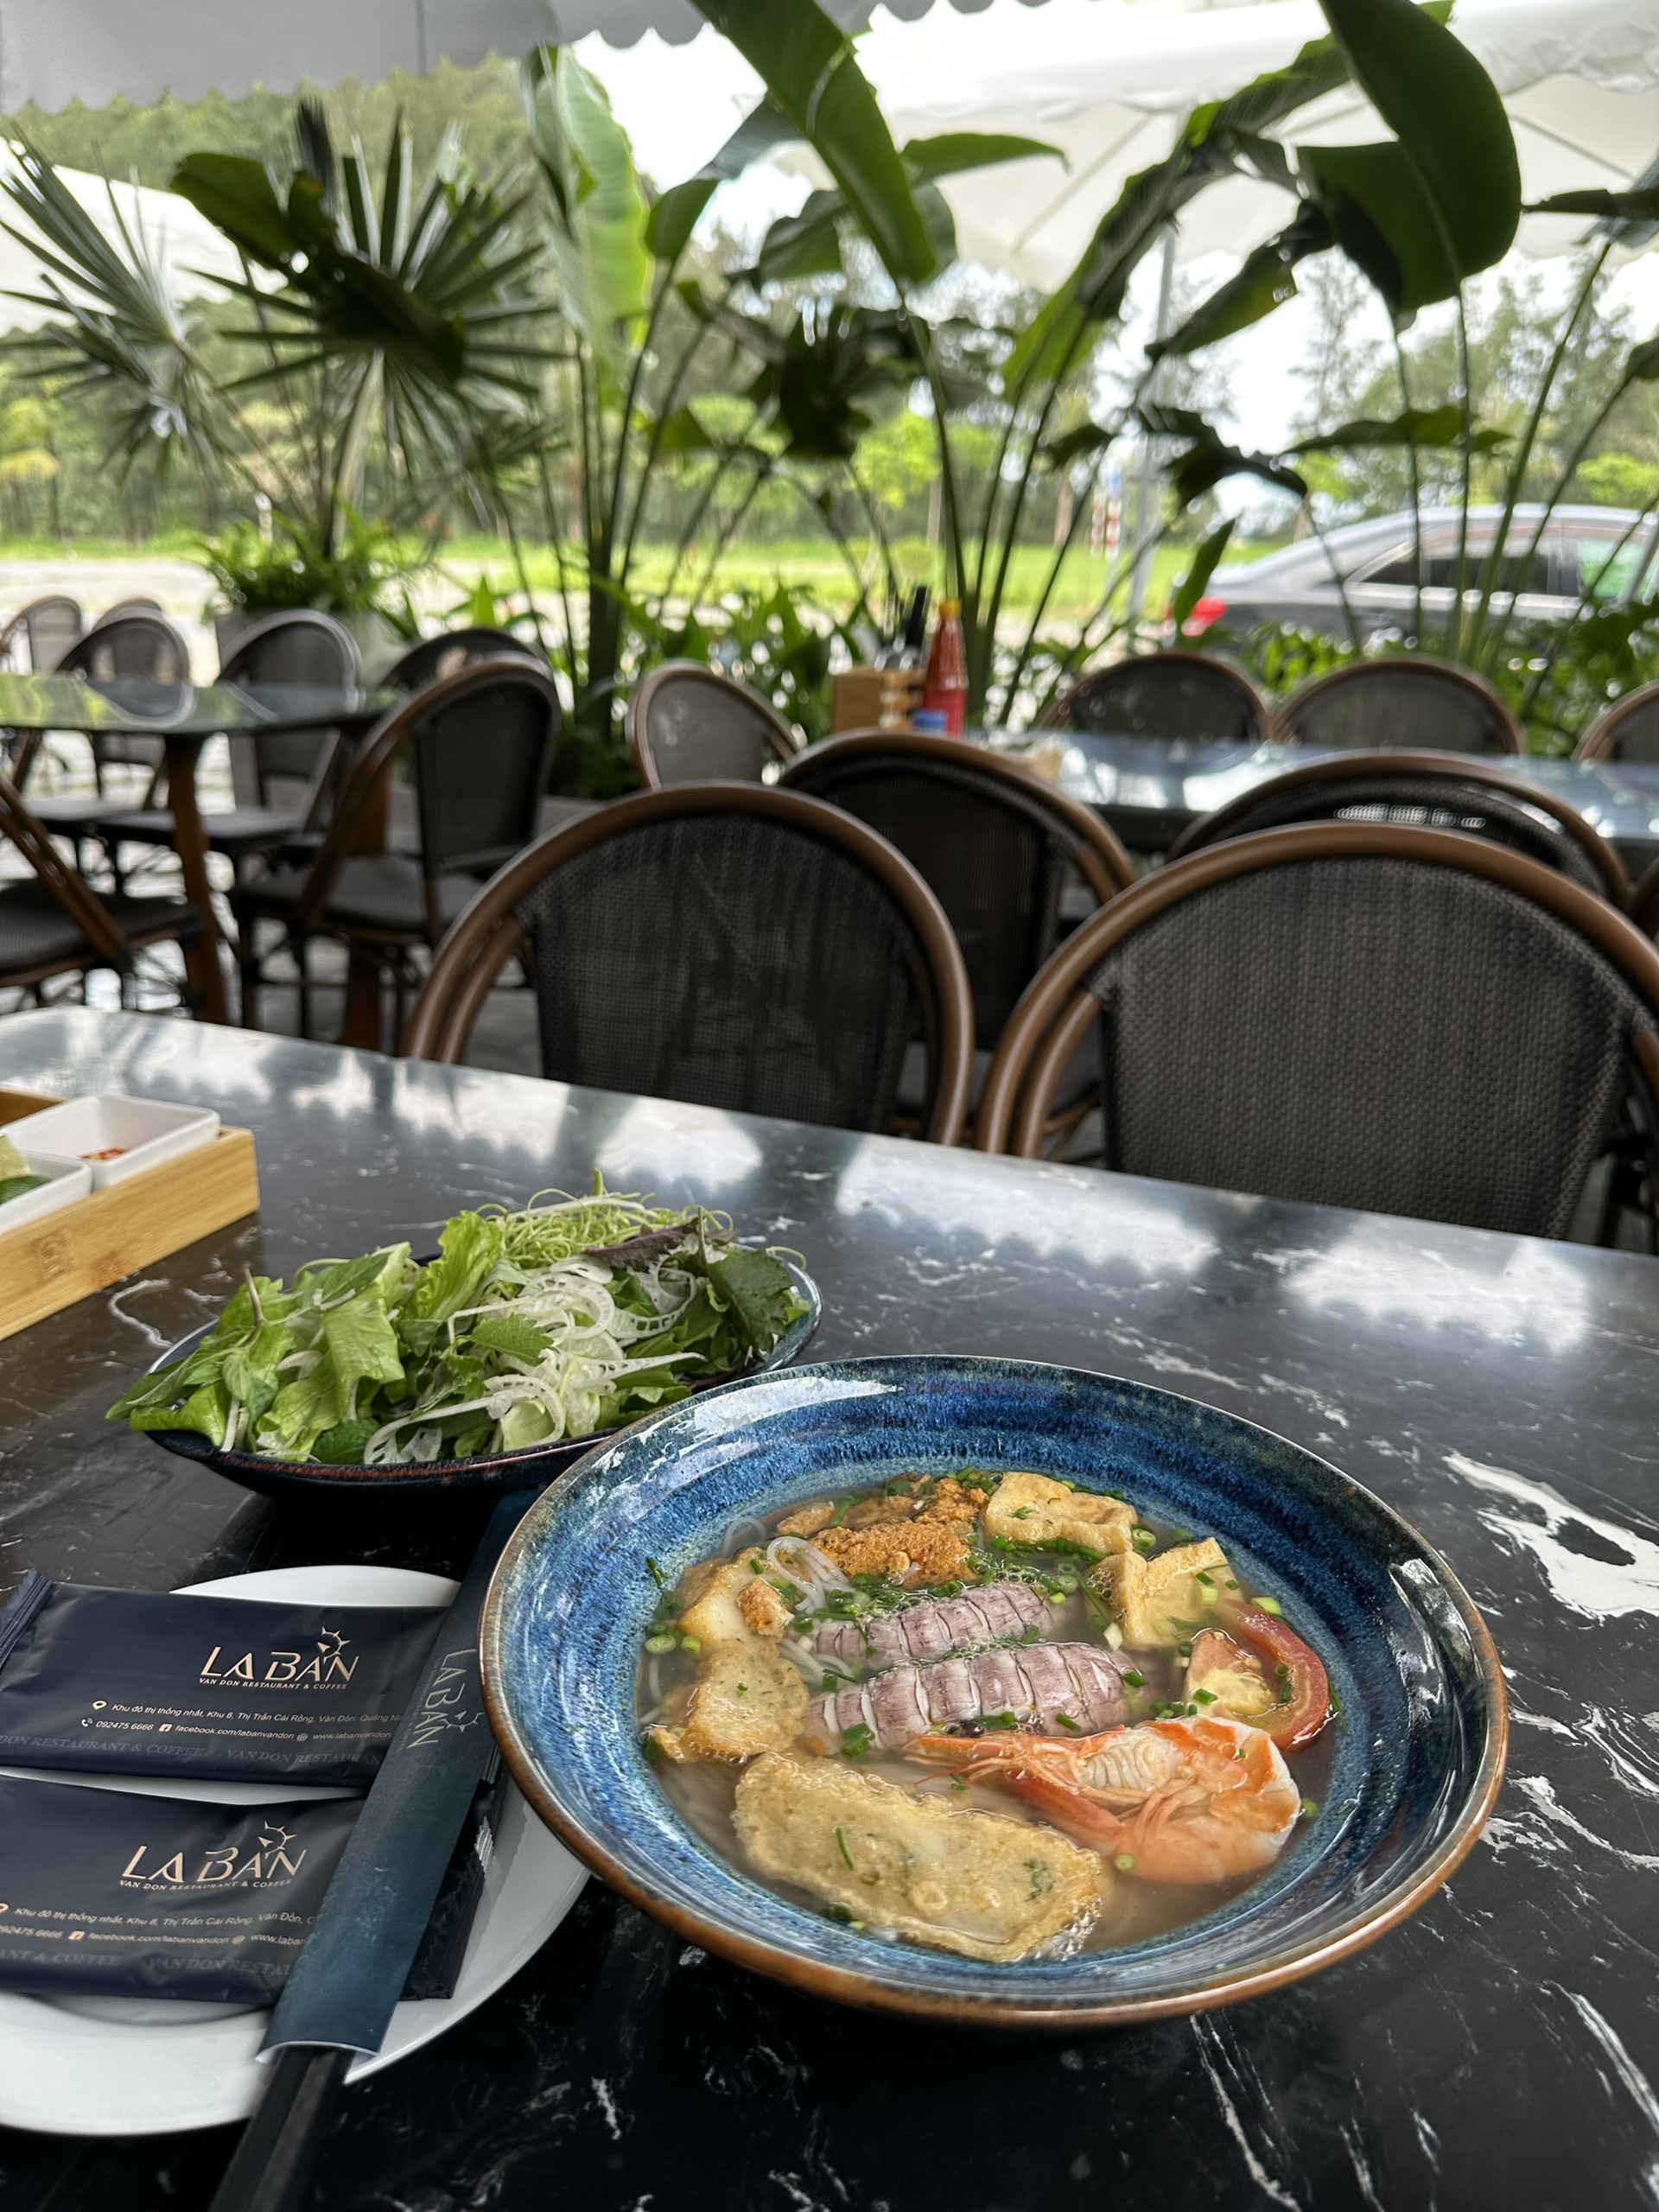 Nhà hàng nổi tiếng nào tại Vân Đồn có món bún hải sản ngon?
